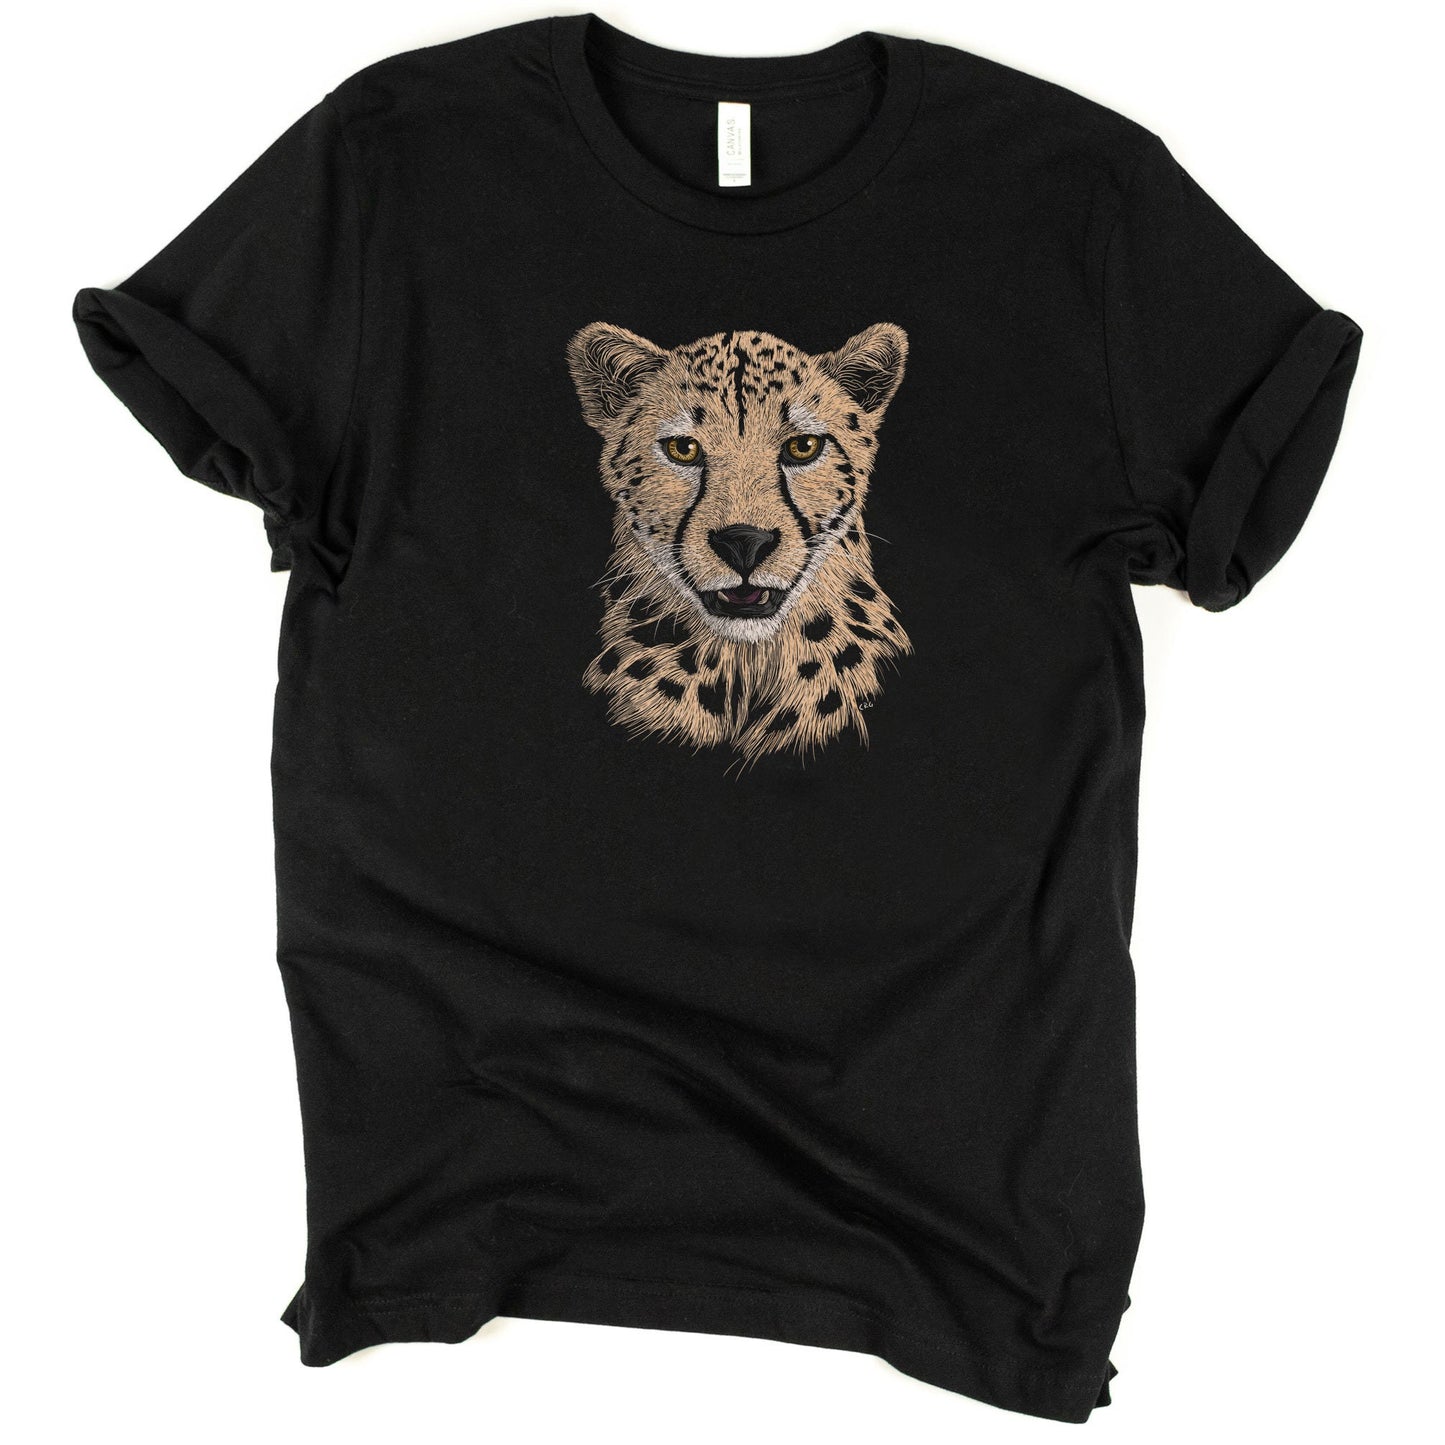 Cheetah Shirt